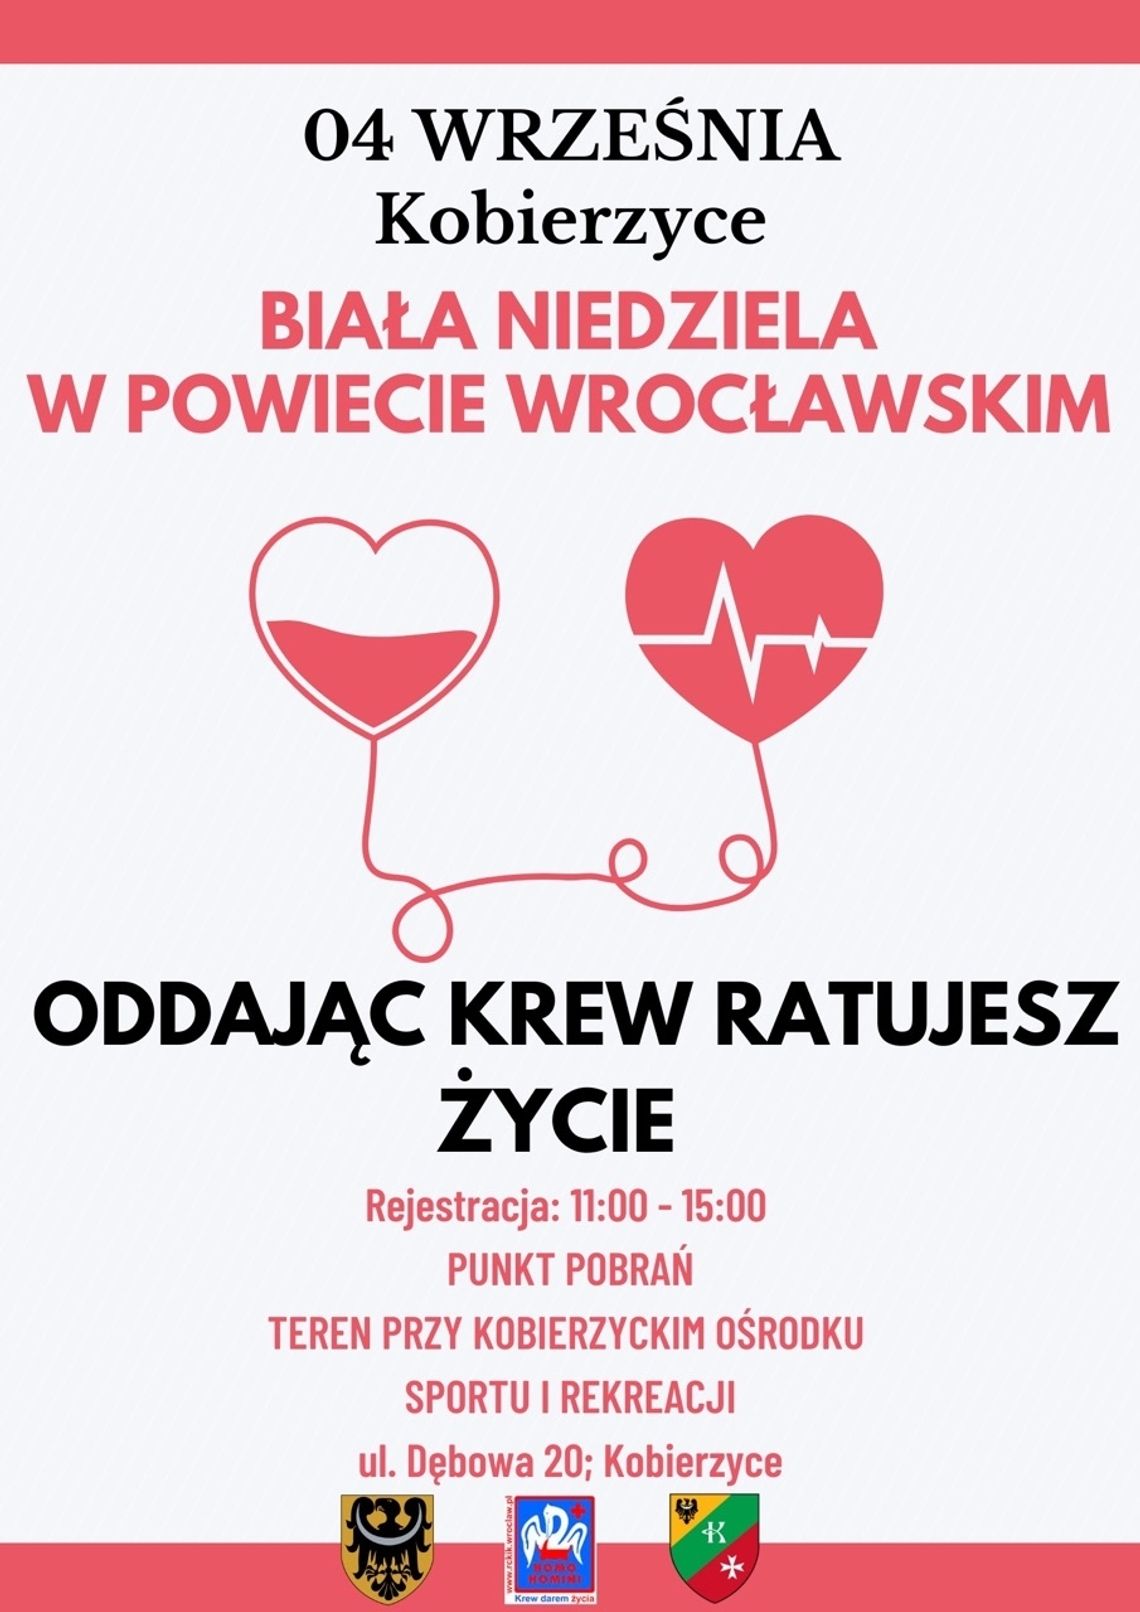 Biała Niedziela w Powiecie Wrocławskim. Zbadaj się, to nie boli, czyli bezpłatne badania i konsultacje medyczne